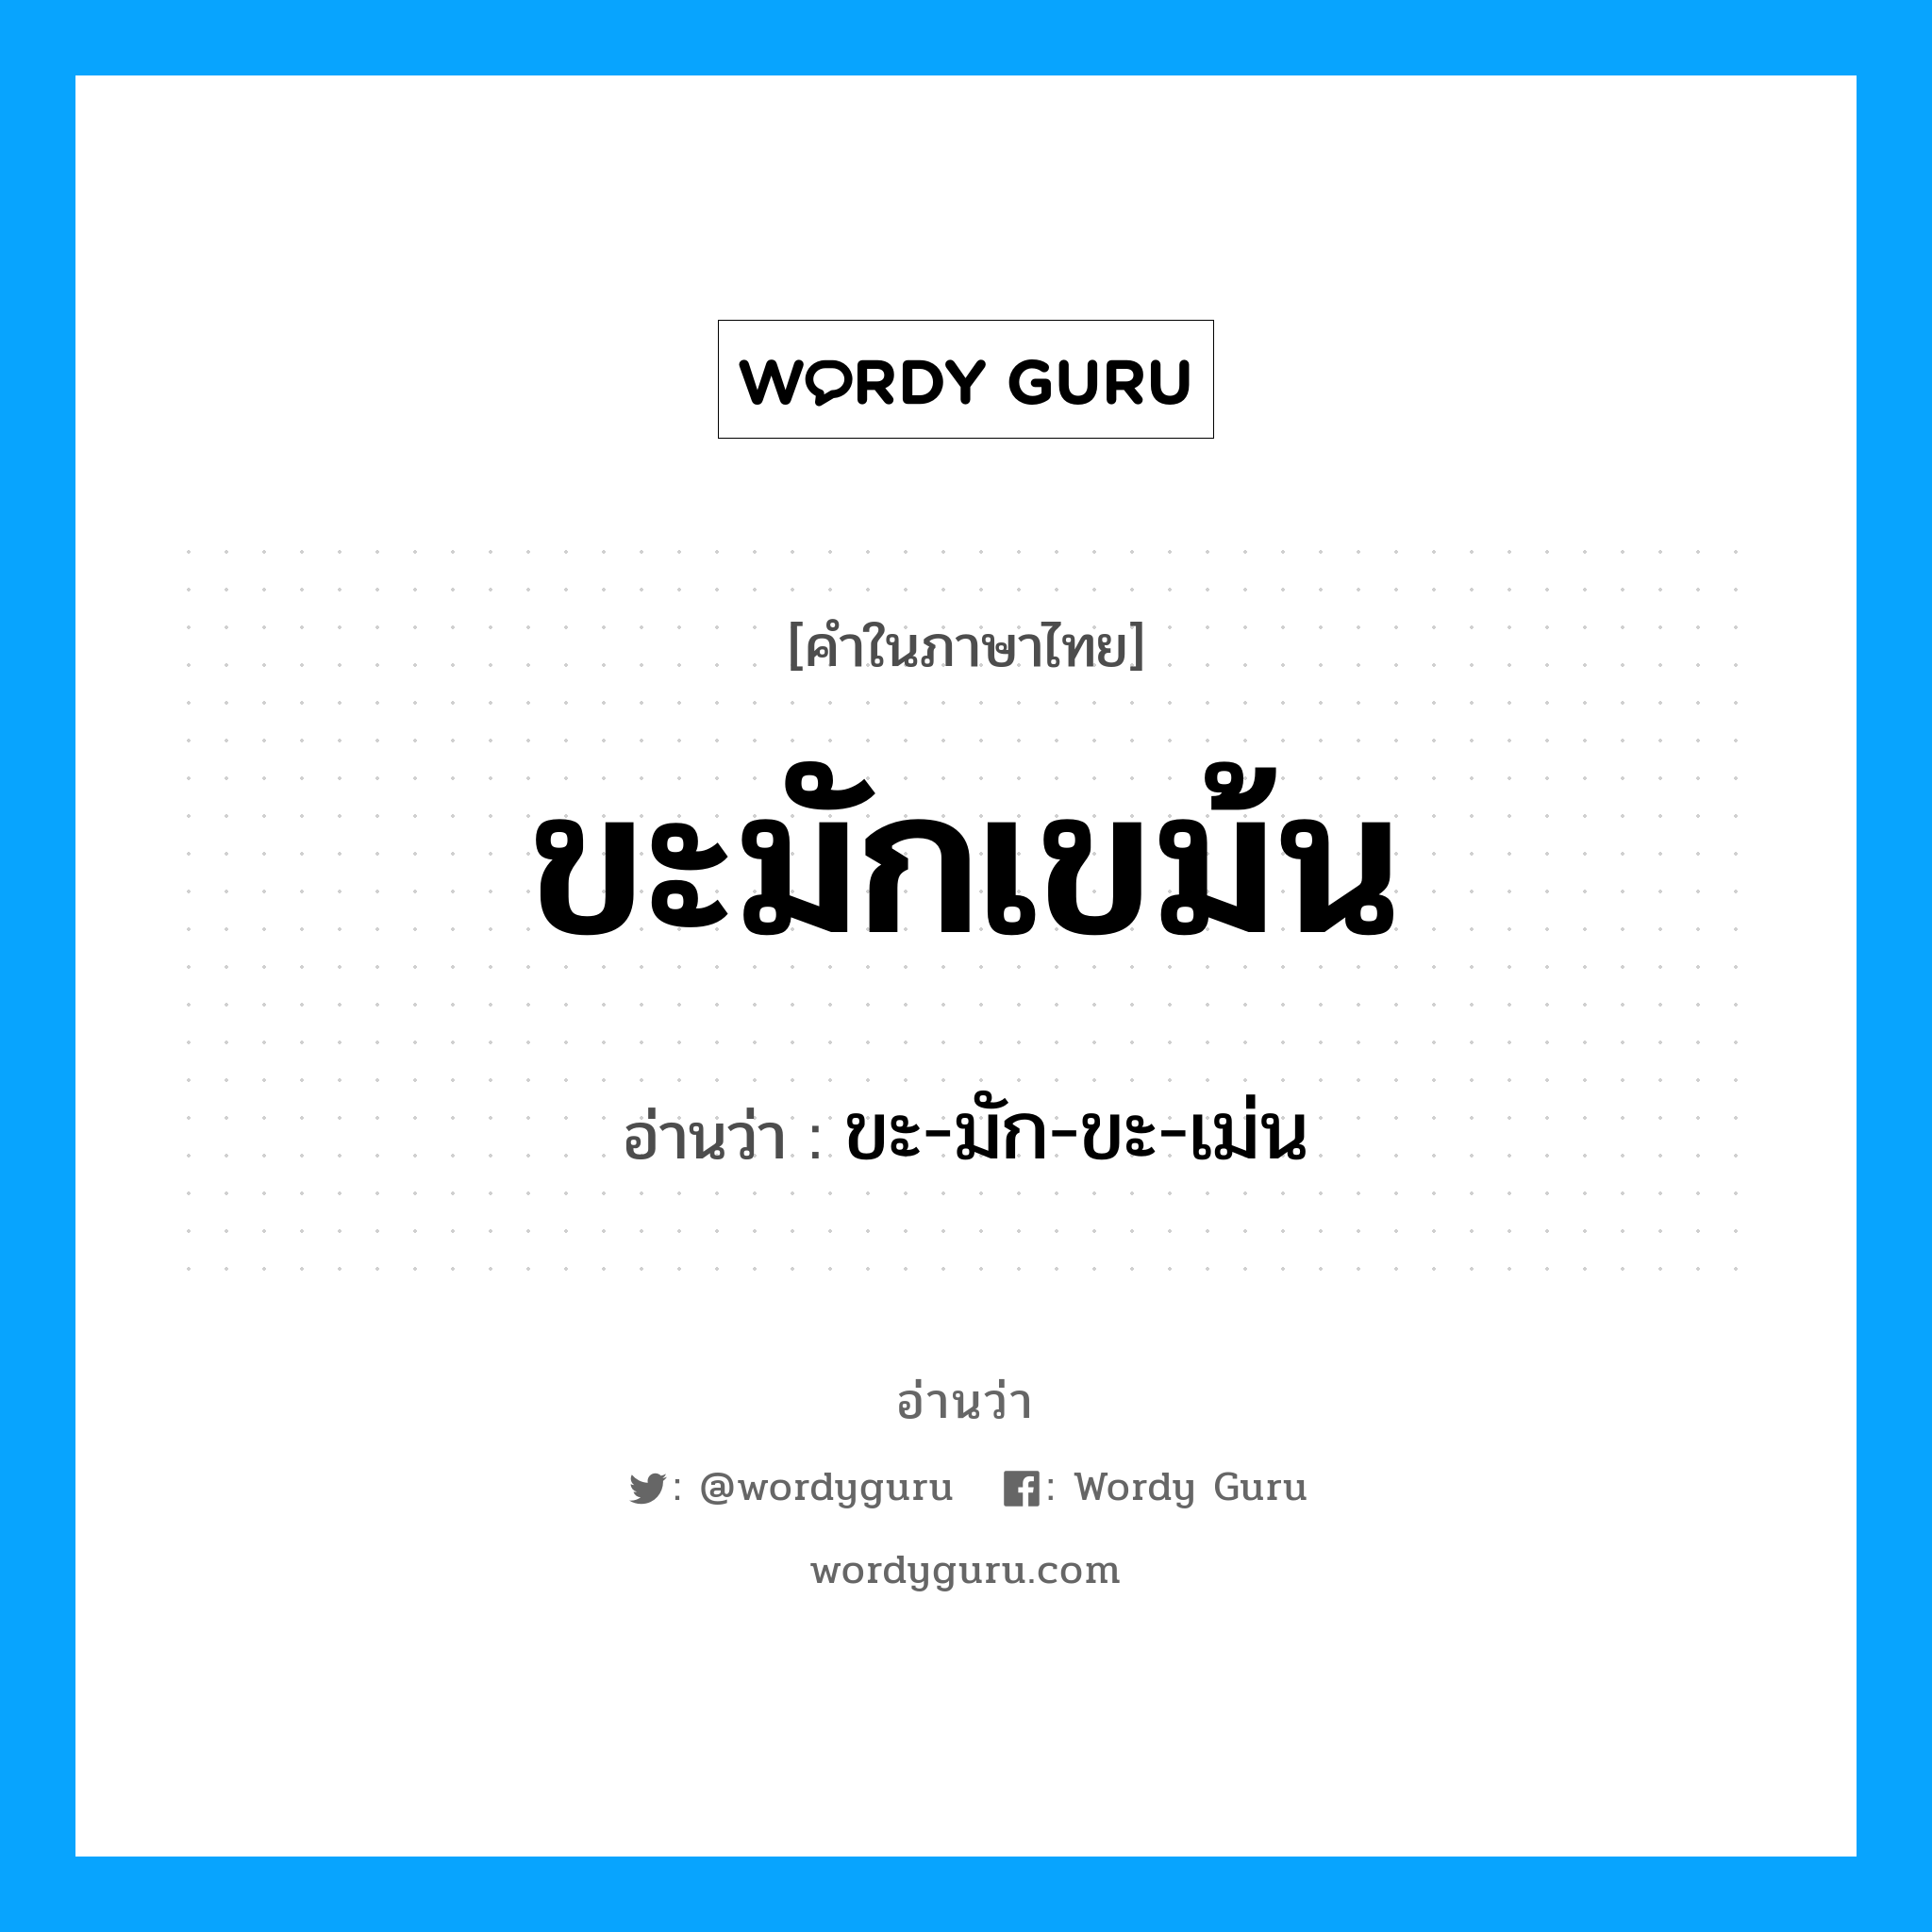 ขะ-มัก-ขะ-เม่น เป็นคำอ่านของคำไหน?, คำในภาษาไทย ขะ-มัก-ขะ-เม่น อ่านว่า ขะมักเขม้น